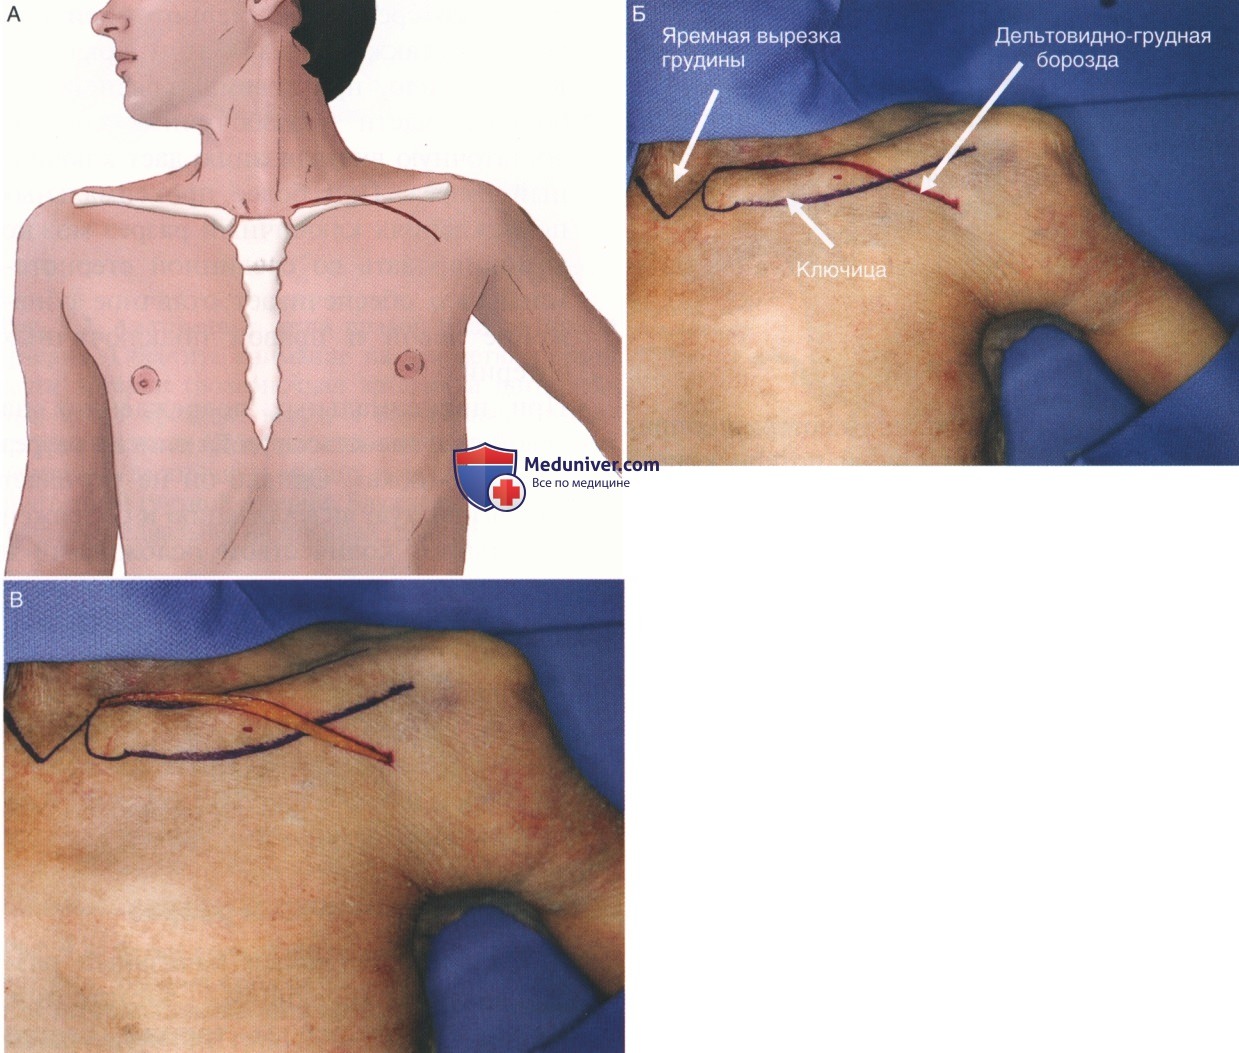 Техника, этапы операции при повреждении подключичных сосудов - артерий, вен